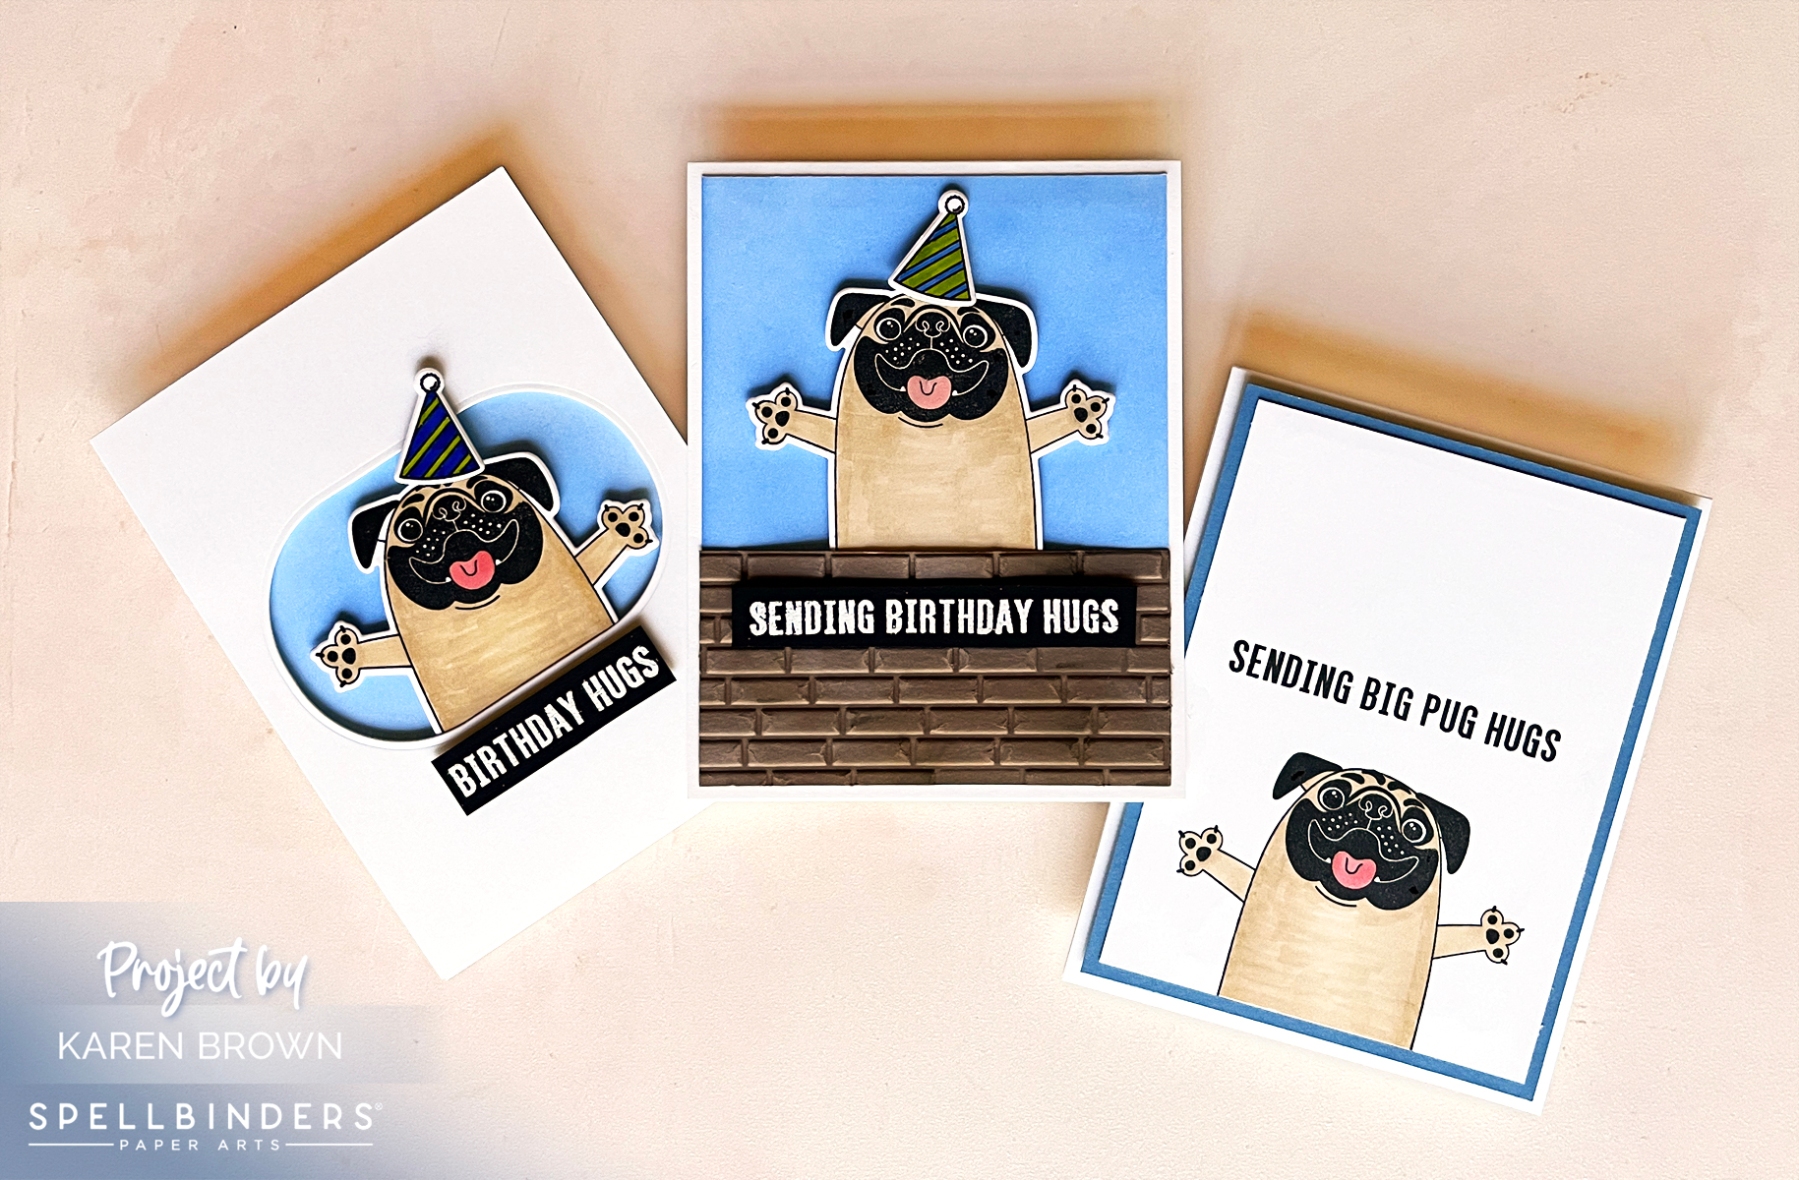 3 Simon Hurley Big Pug Hugs Birthday Cards.